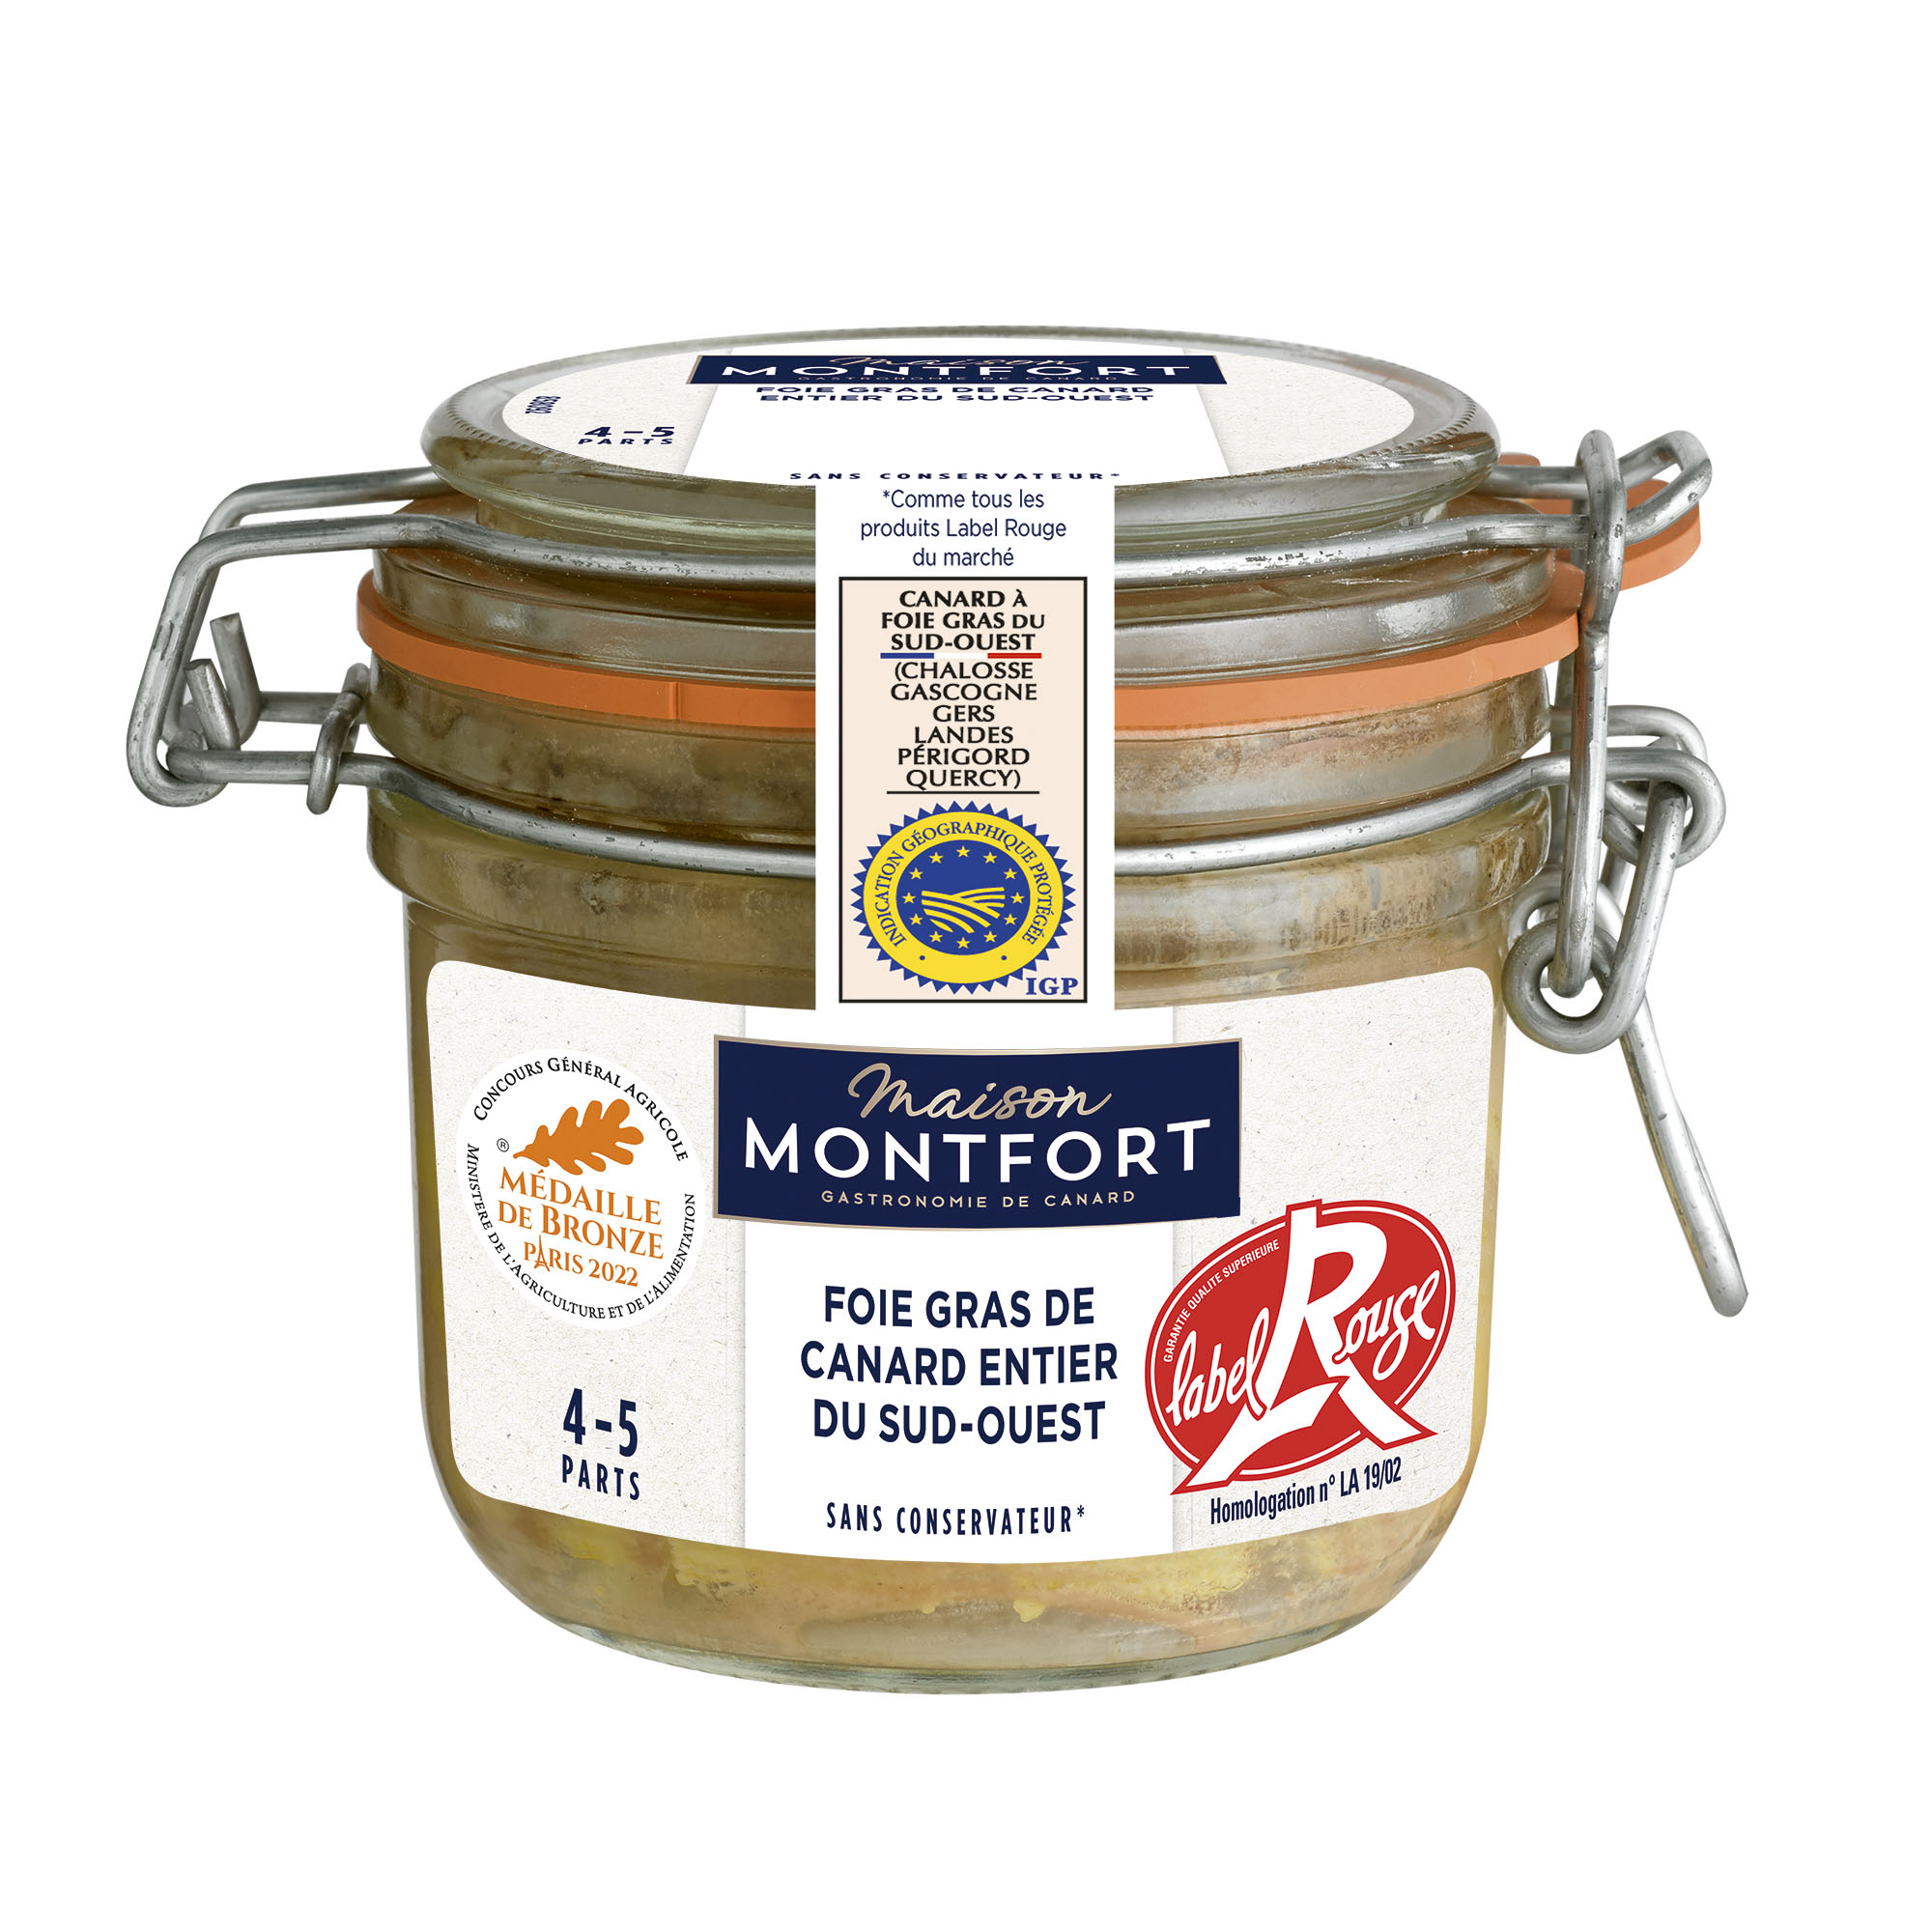 MAISON MONTFORT Foie gras de canard entier du Sud-Ouest Label